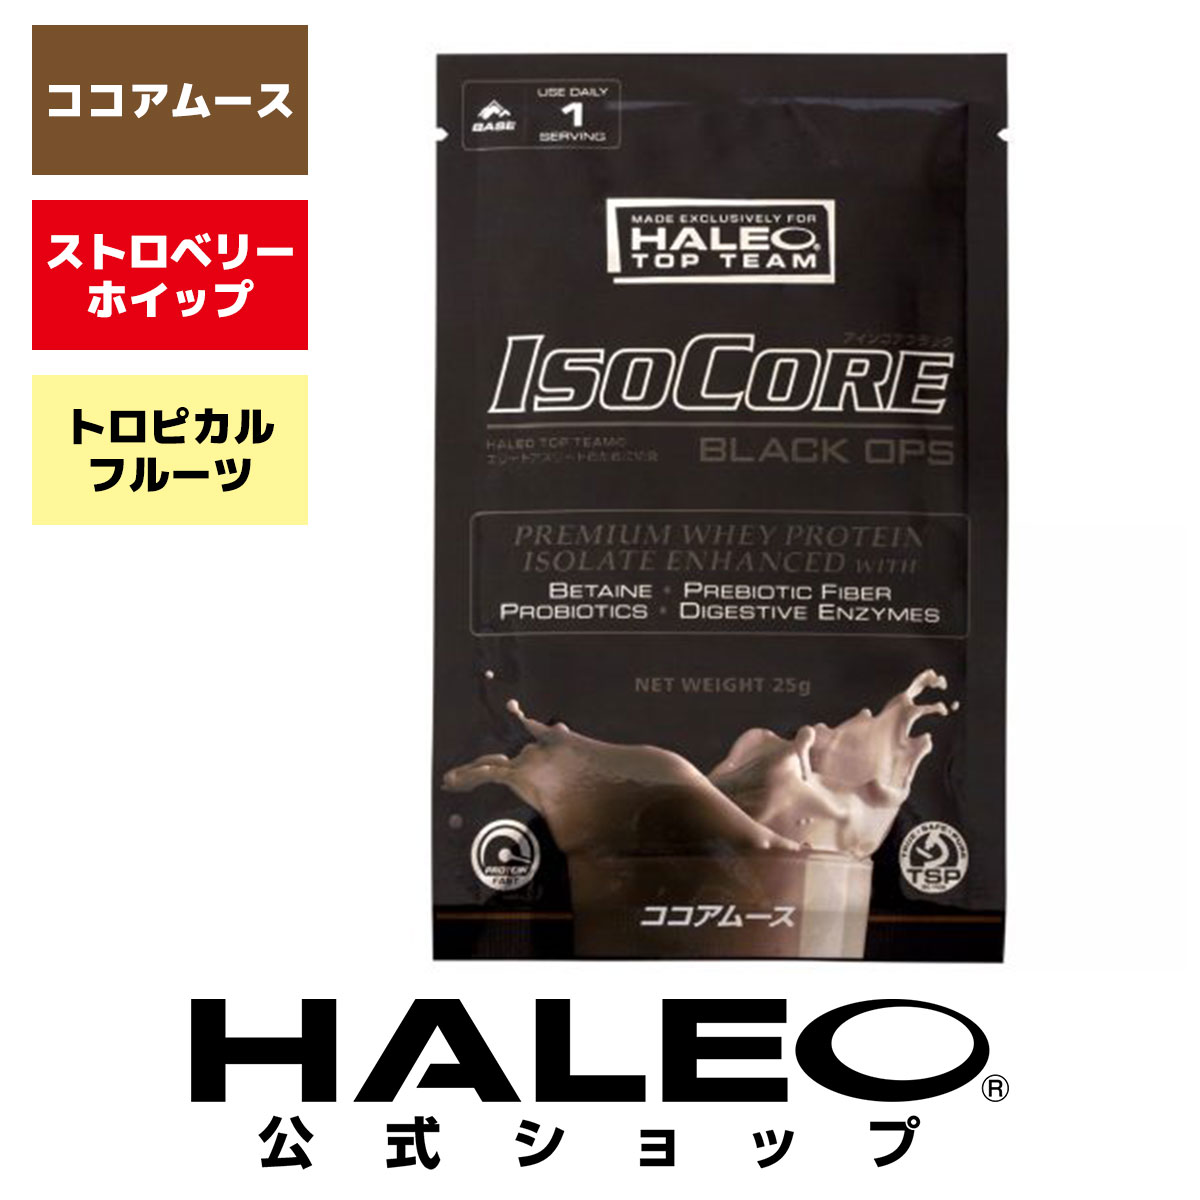 【【公式】HALEO ハレオ アイソコアブラックオプス ISOCORE BLACK OPS 使い切りパック (WPI プロテイン・ベタイン・ 乳酸菌） ギフト HALEOxBULKオフィシャル